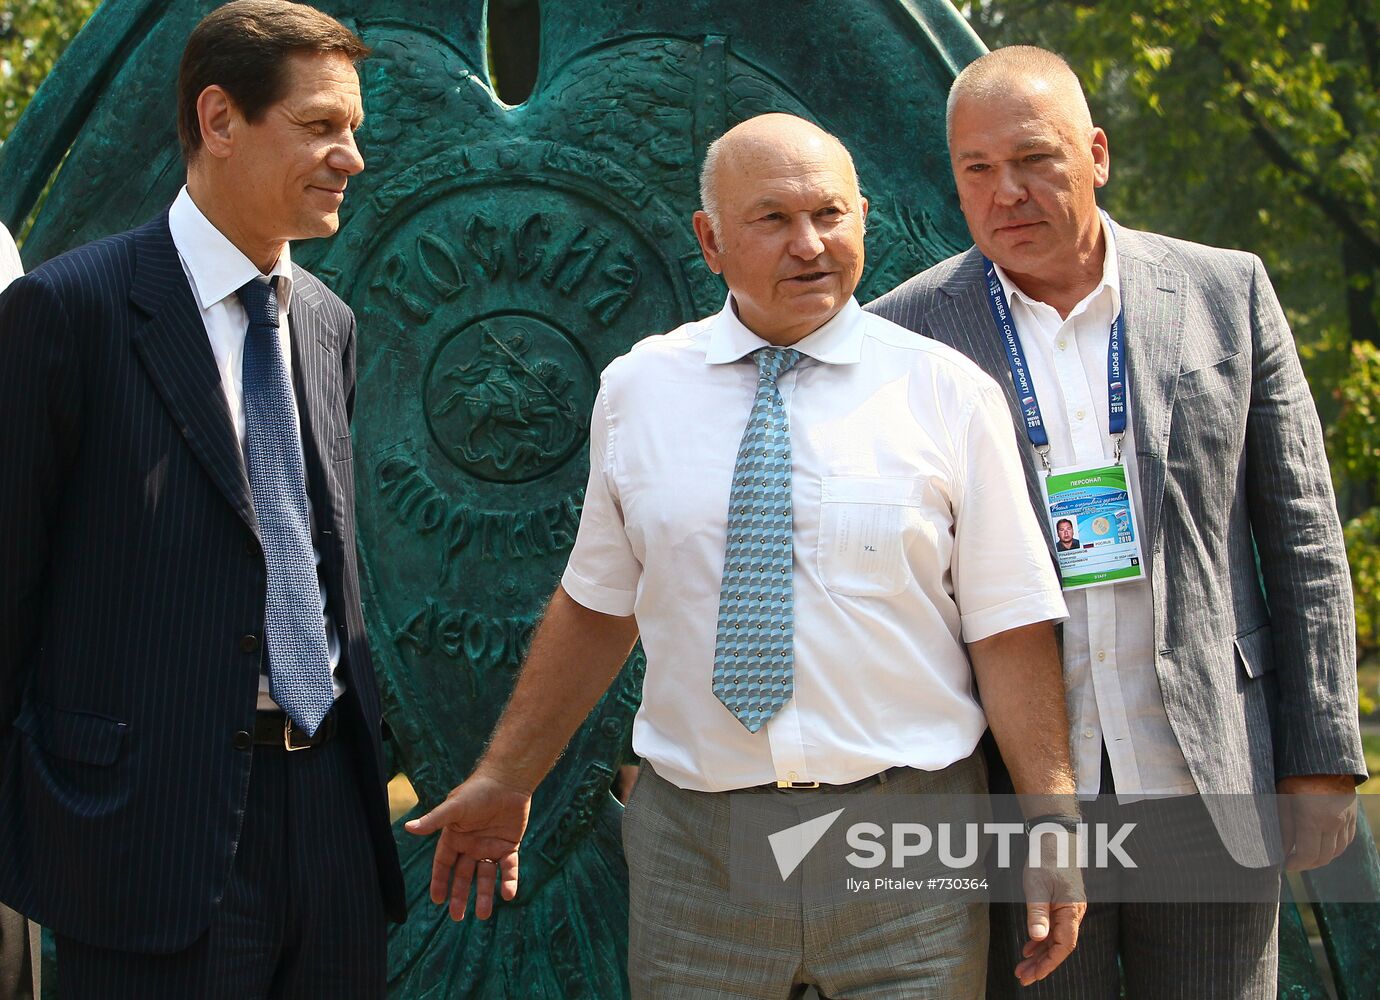 Alexander Zhukov, Yury Luzhkov and Alexander Rukavishnikov